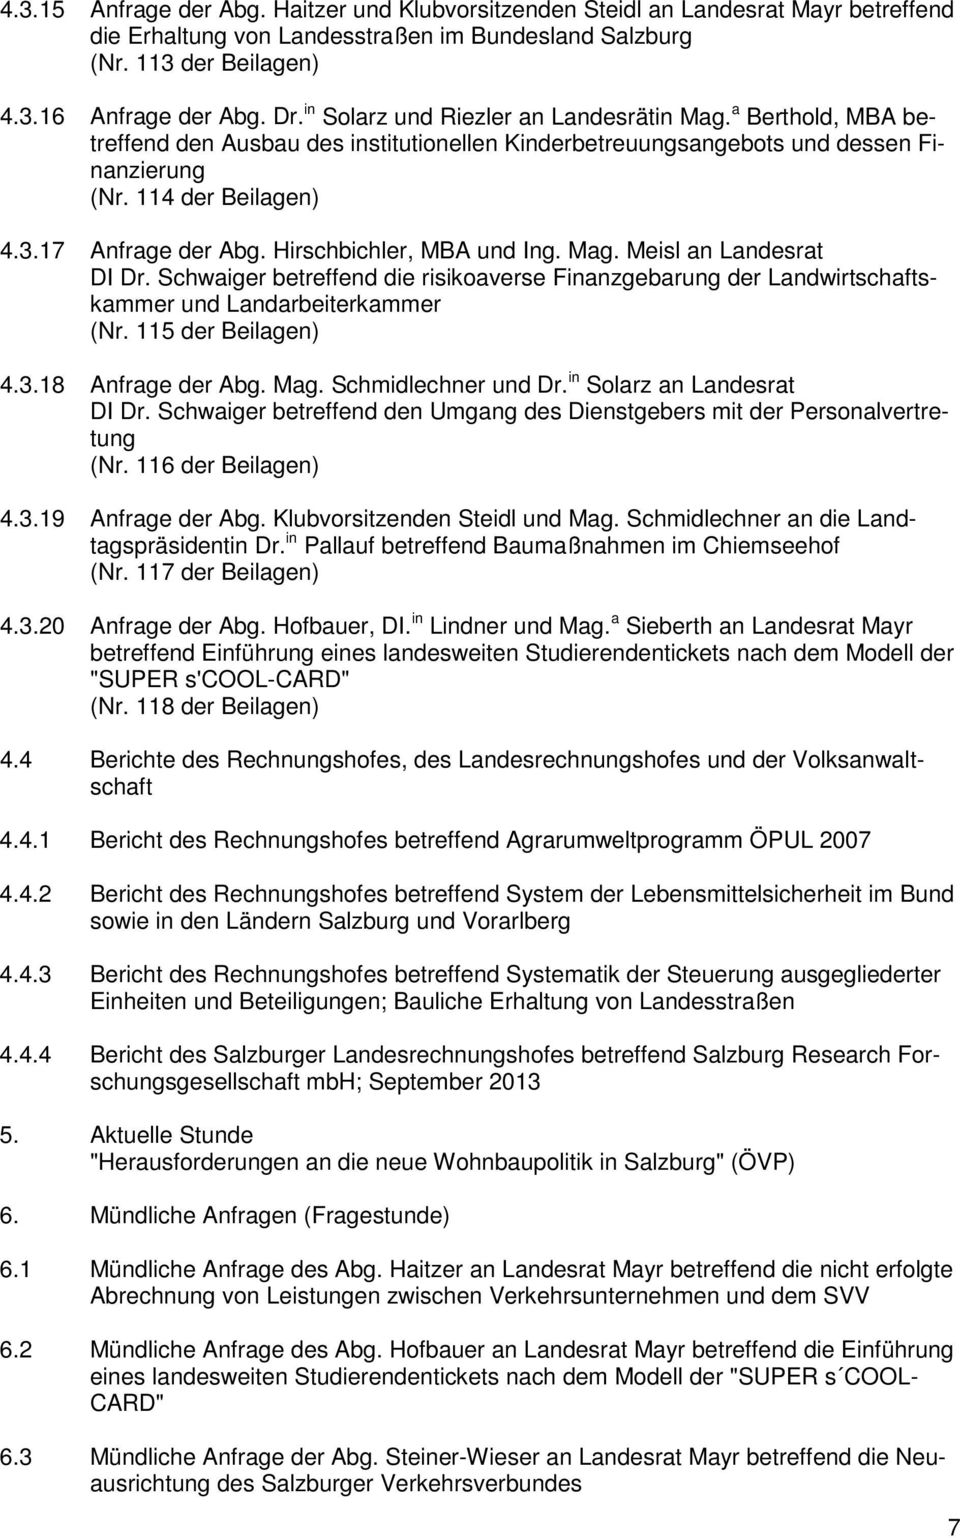 Hirschbichler, MBA und Ing. Mag. Meisl an Landesrat DI Dr. Schwaiger betreffend die risikoaverse Finanzgebarung der Landwirtschaftskammer und Landarbeiterkammer (Nr. 115 der Beilagen) 4.3.